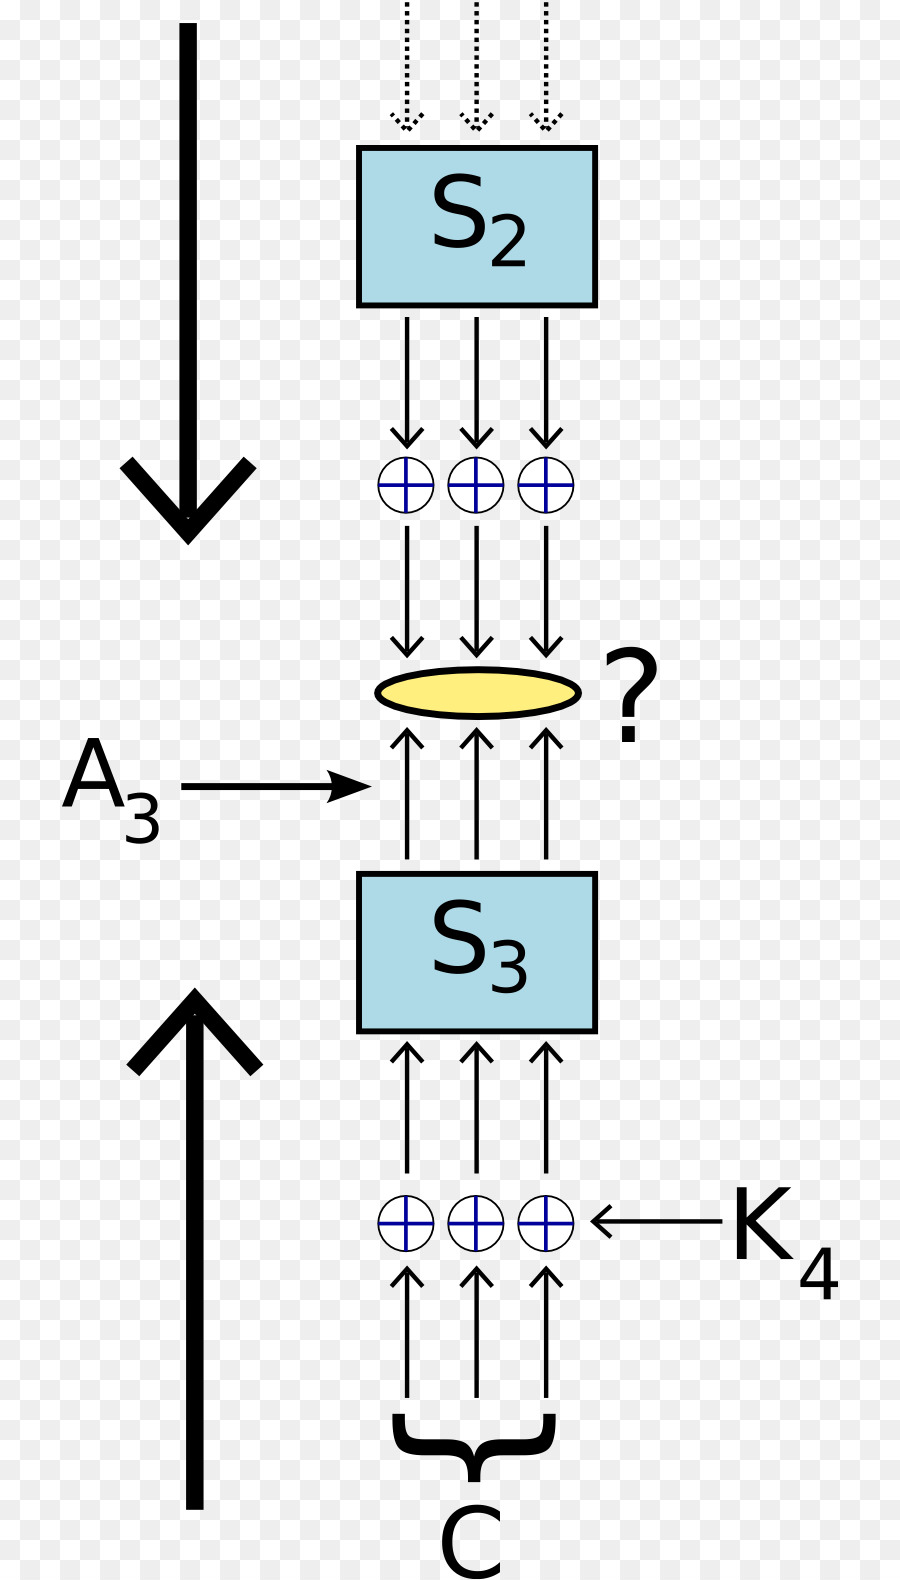 L'analisi lineare a chiave Simmetrica algoritmo di Beaufort cipher - altri